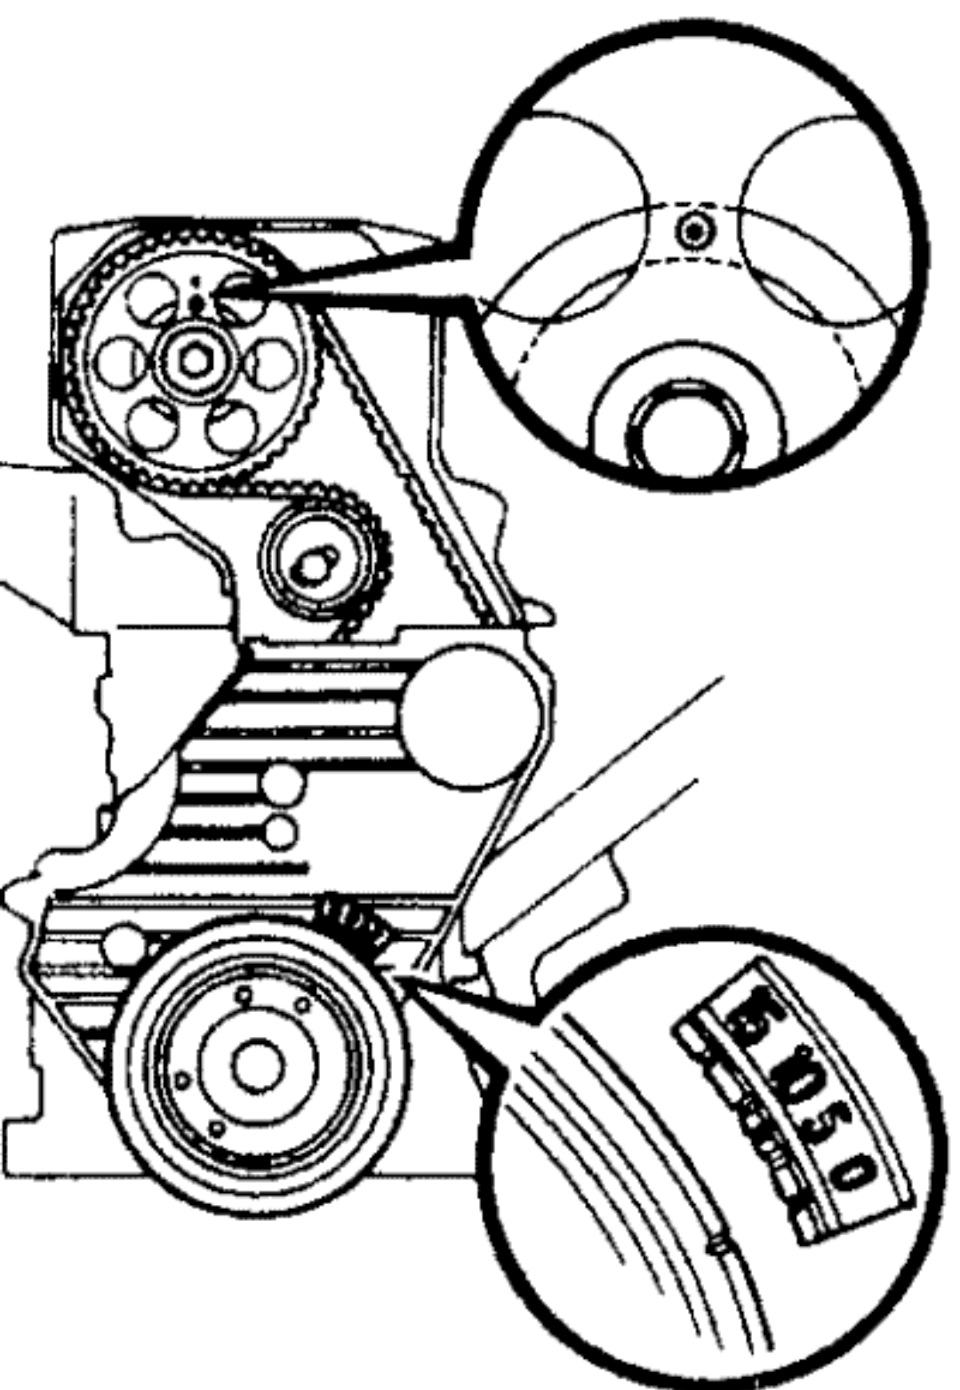 Замена ремня ГРМ Тойота Двигатель 5S-FE, замена ремней навесного оборудования